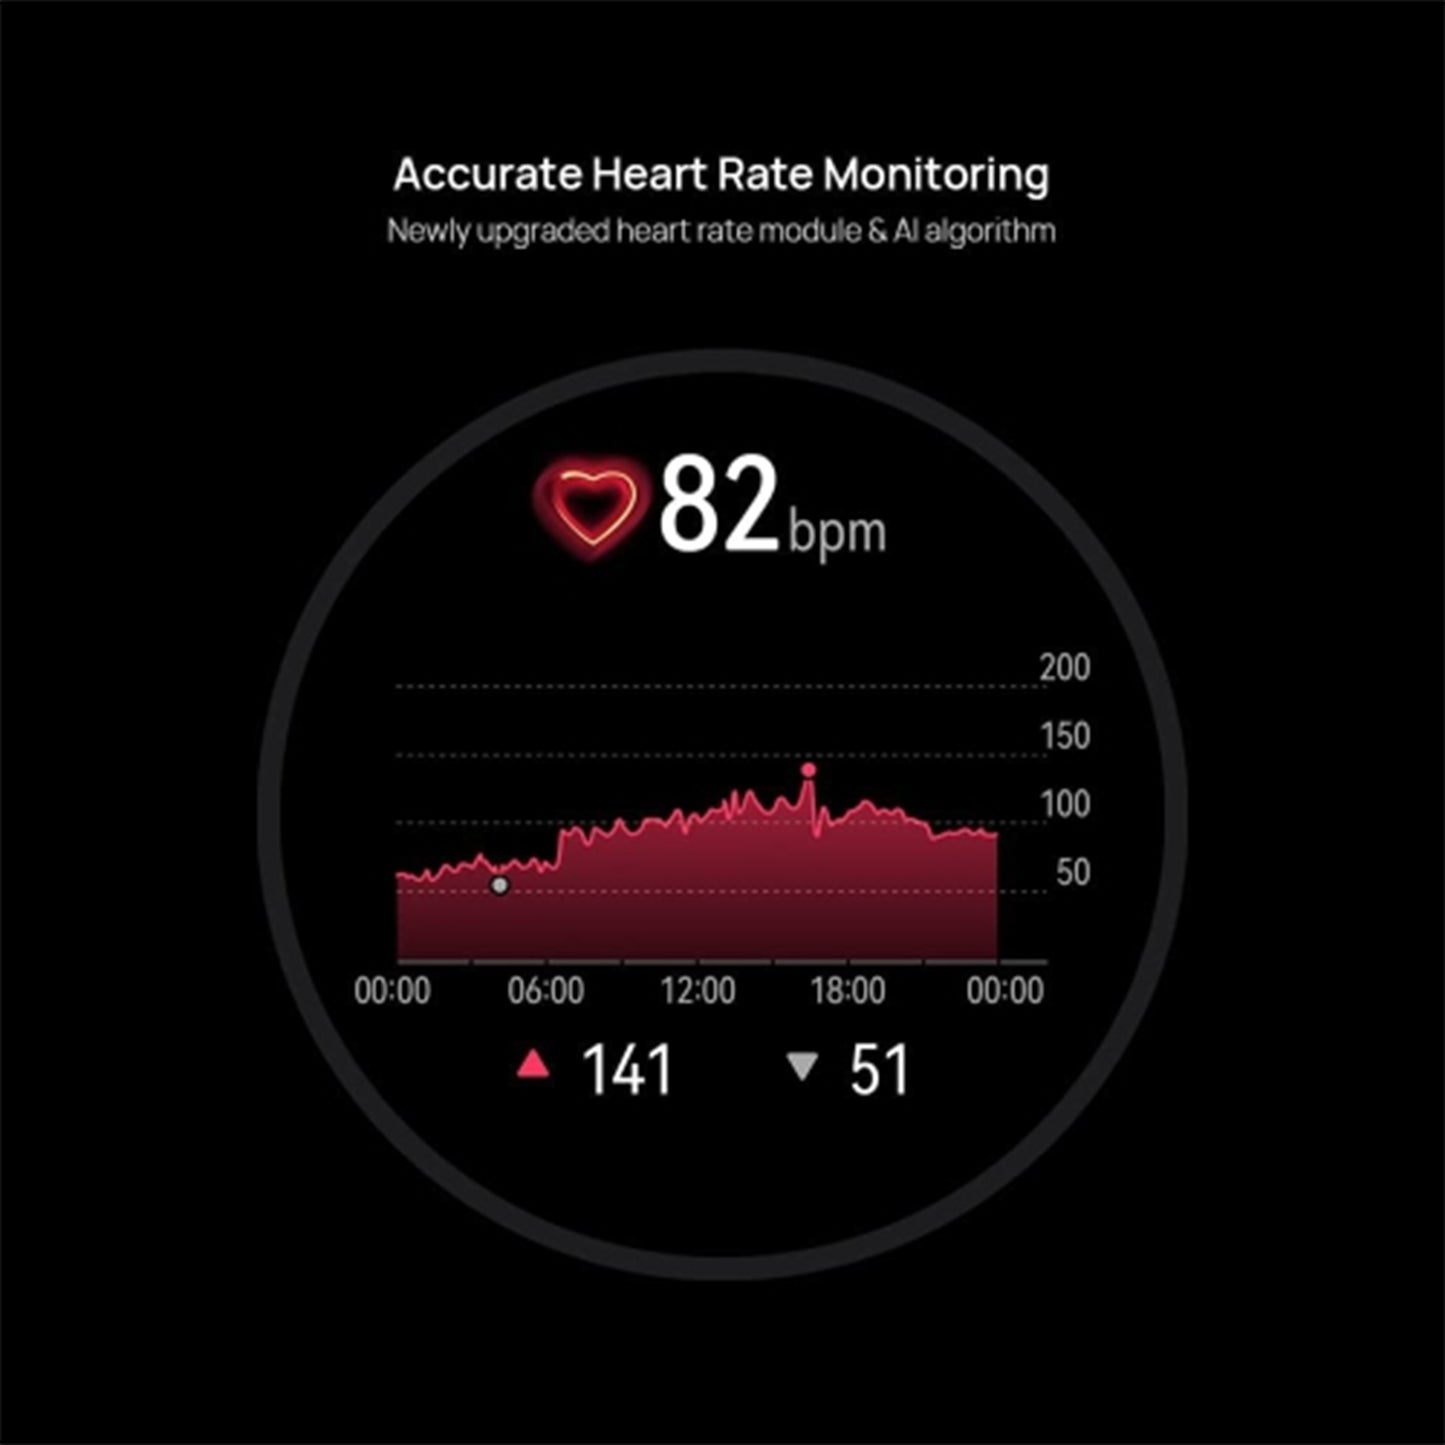 ساعة هواوي جي تي 3 الذكية مقاس 46 ملم - بطارية طويلة، شاشة SpO2 طوال اليوم، مدرب الجري بالذكاء الاصطناعي، مراقبة دقيقة لمعدل ضربات القلب، أكثر من 100 وضع للتمرين، اتصال بلوتوث، ستانلس ستيل 